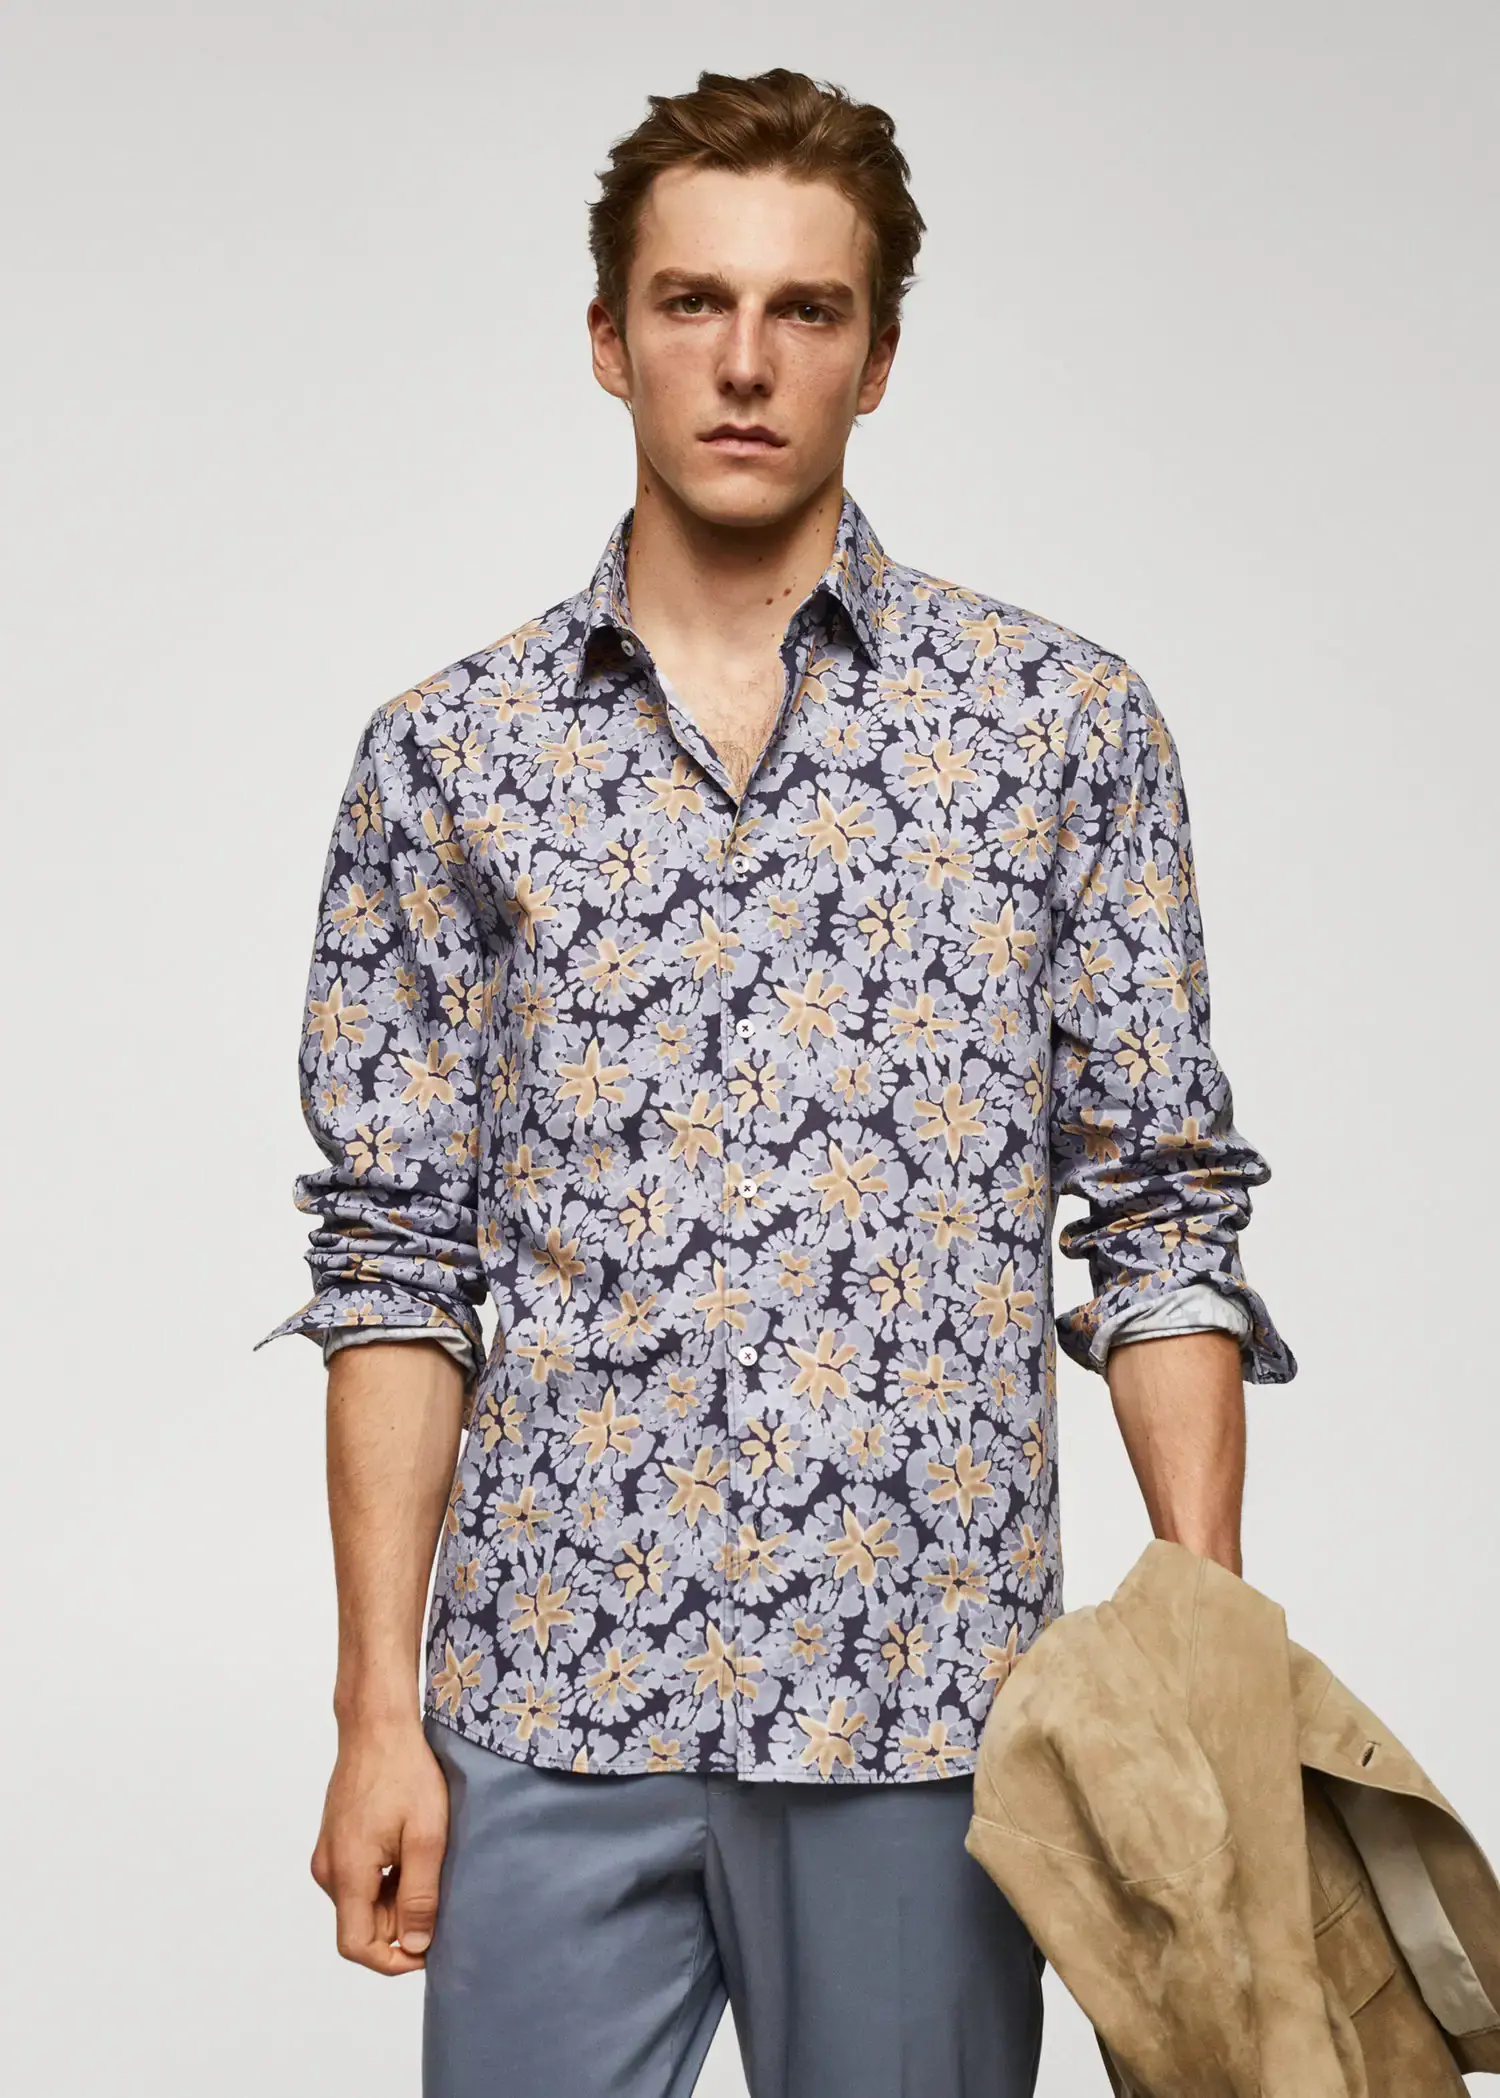 Mango 100% cotton regular-fit printed shirt. 1